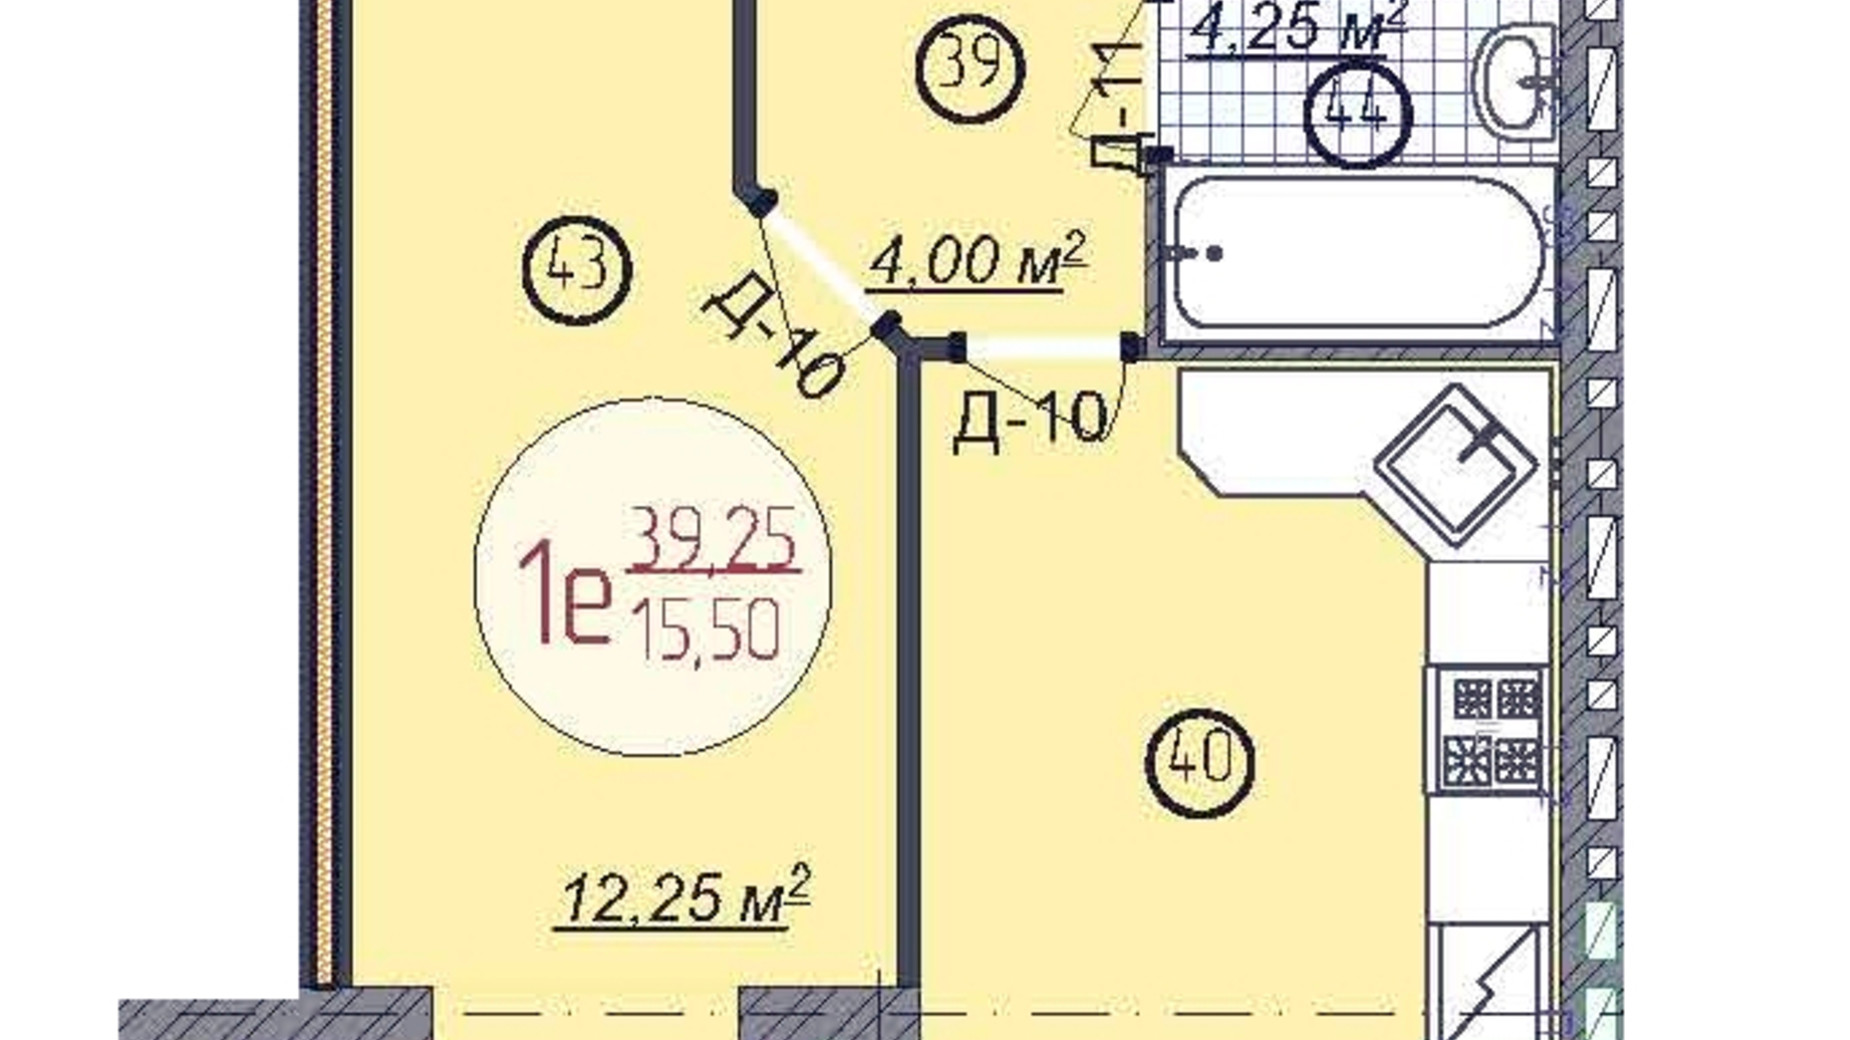 Планировка 1-комнатной квартиры в ЖК Кемпинг Сити 39.25 м², фото 716849